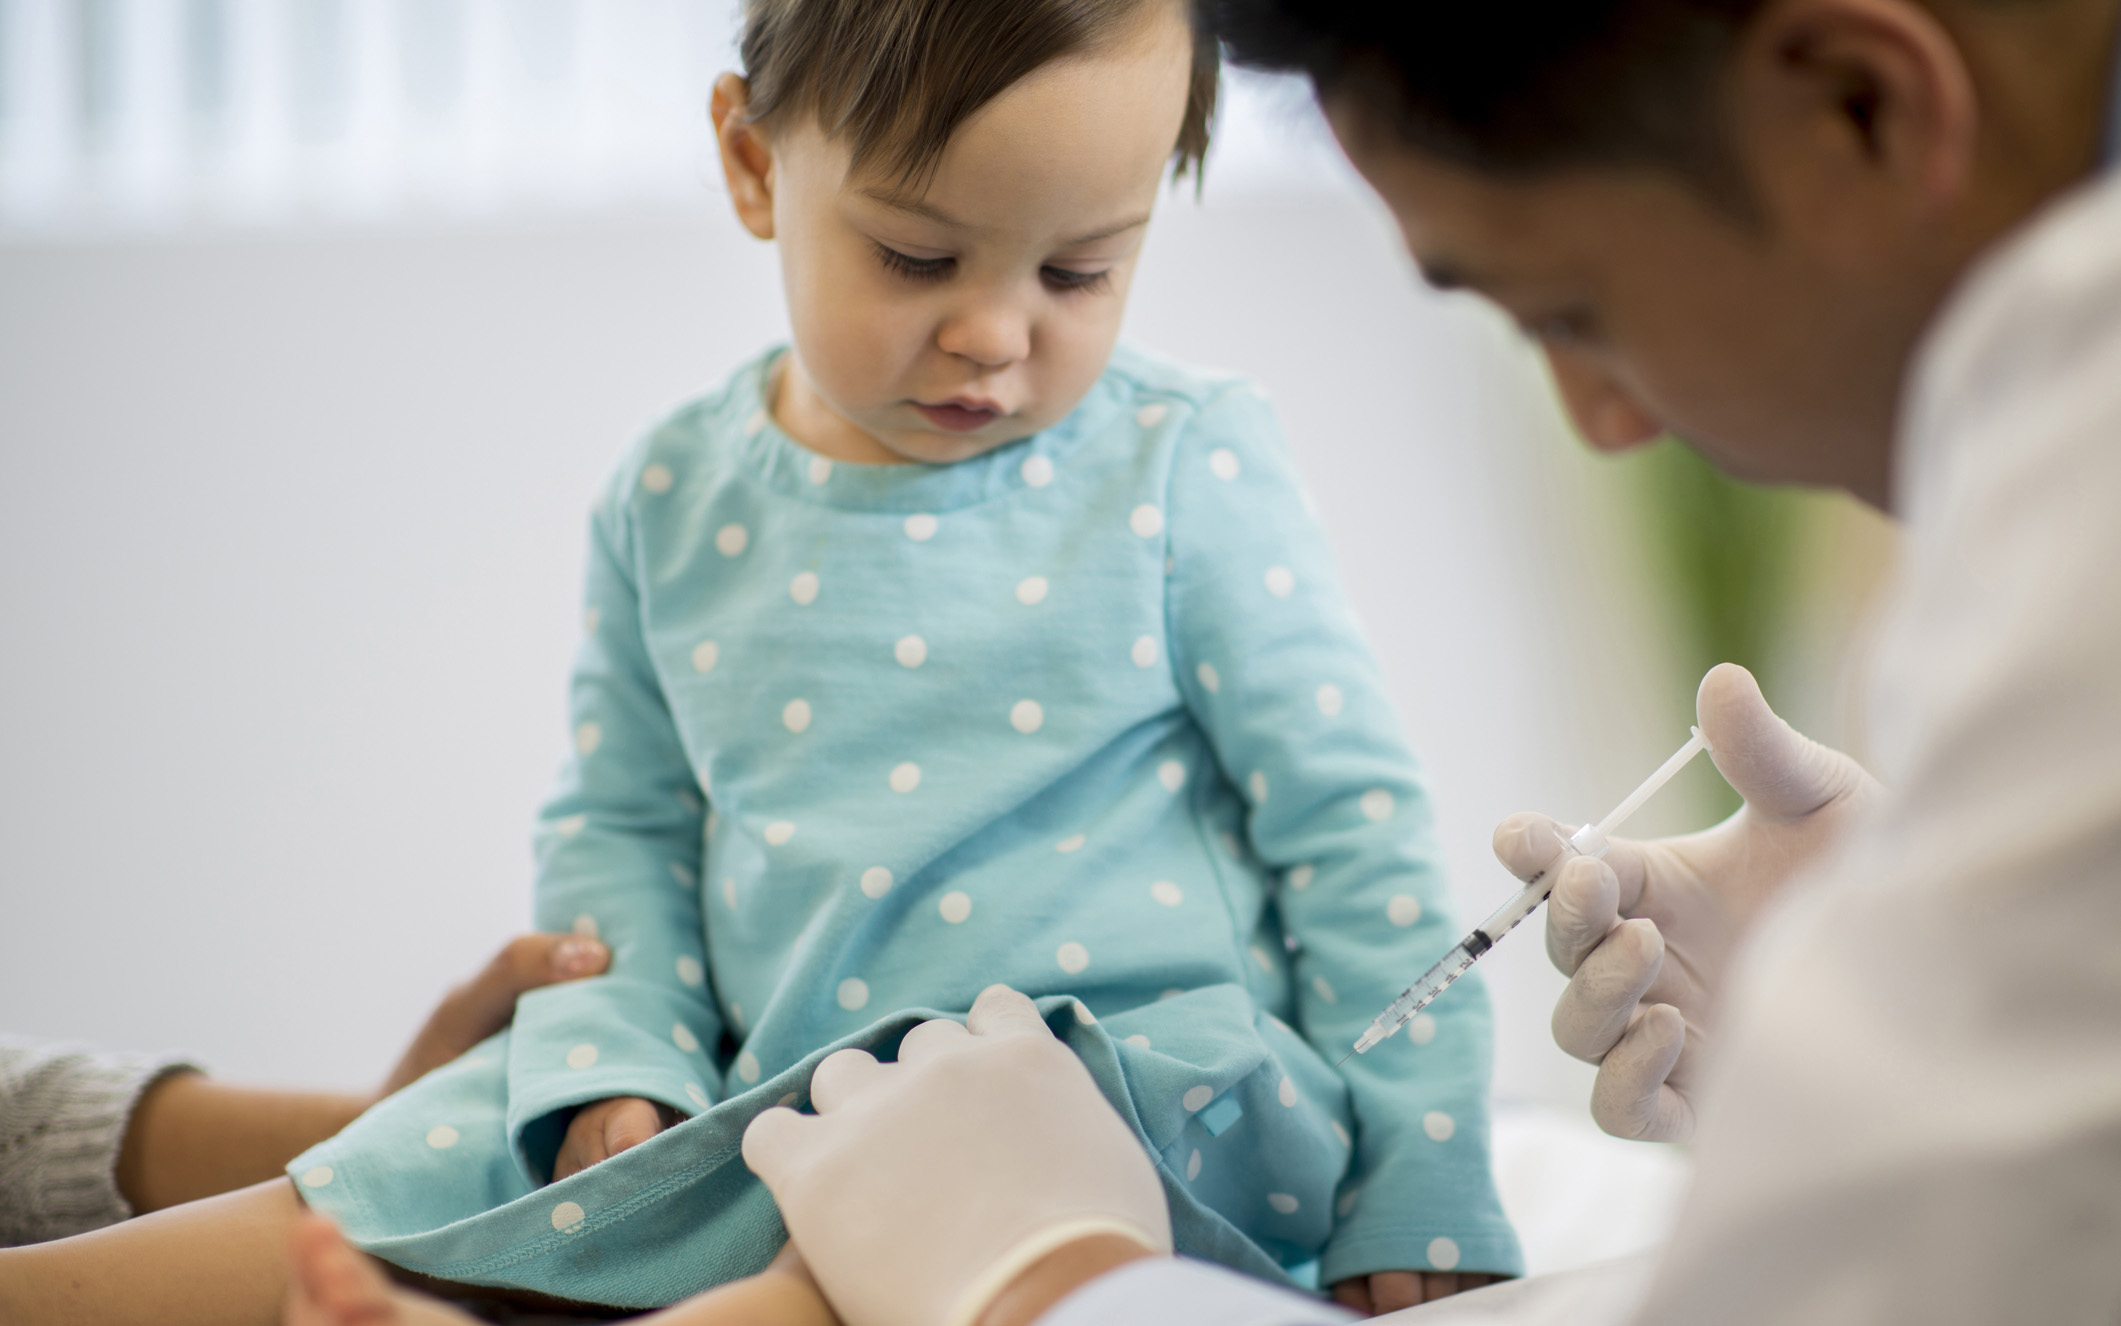 Suomessa lapset saavat MPR-rokotteen 1 ja 6 vuoden ikäisinä.